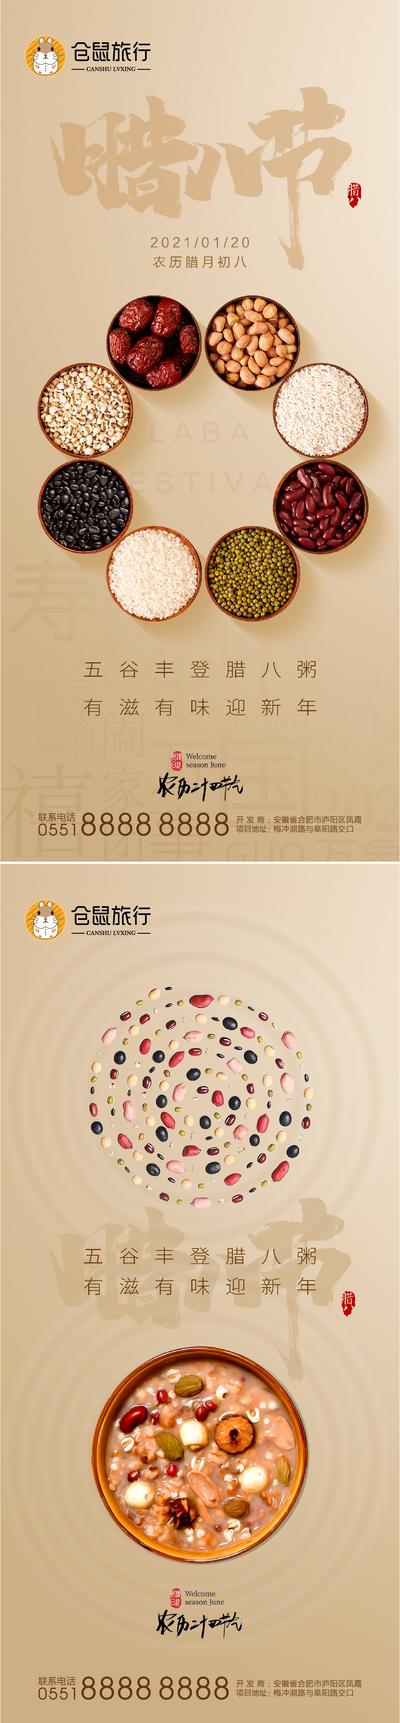 南门网 海报  中国传统节日 腊八节  腊八粥 五谷杂粮 系列